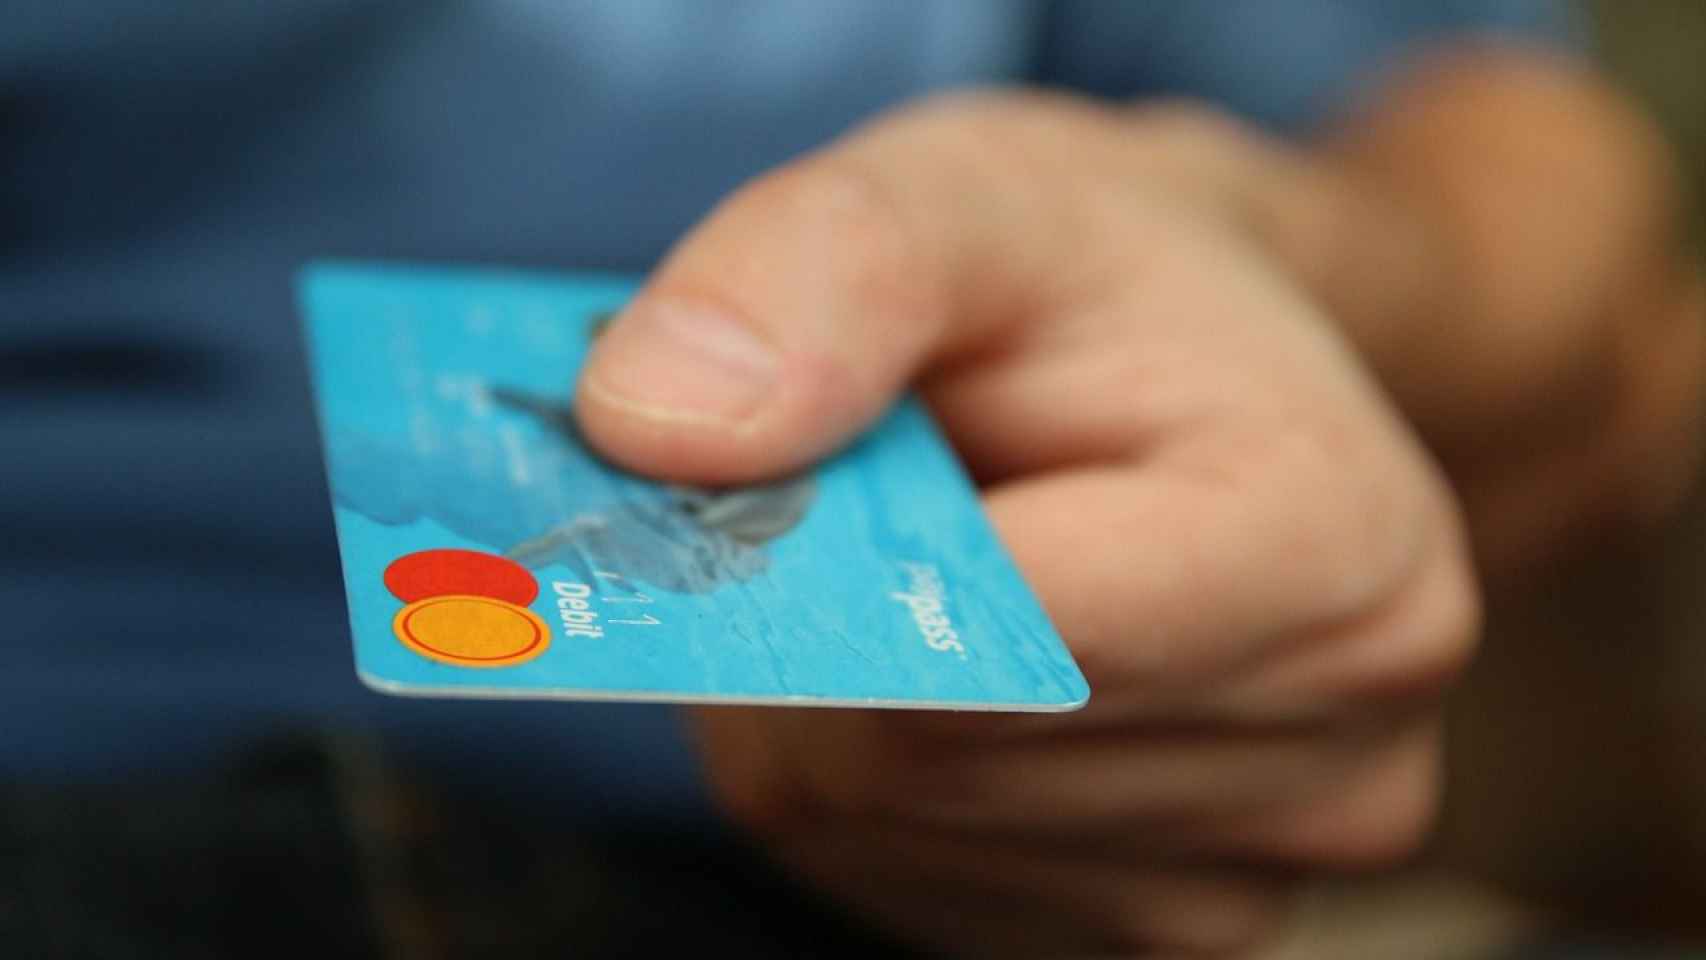 En Suecia casi solo se paga con tarjeta de crédito / CG